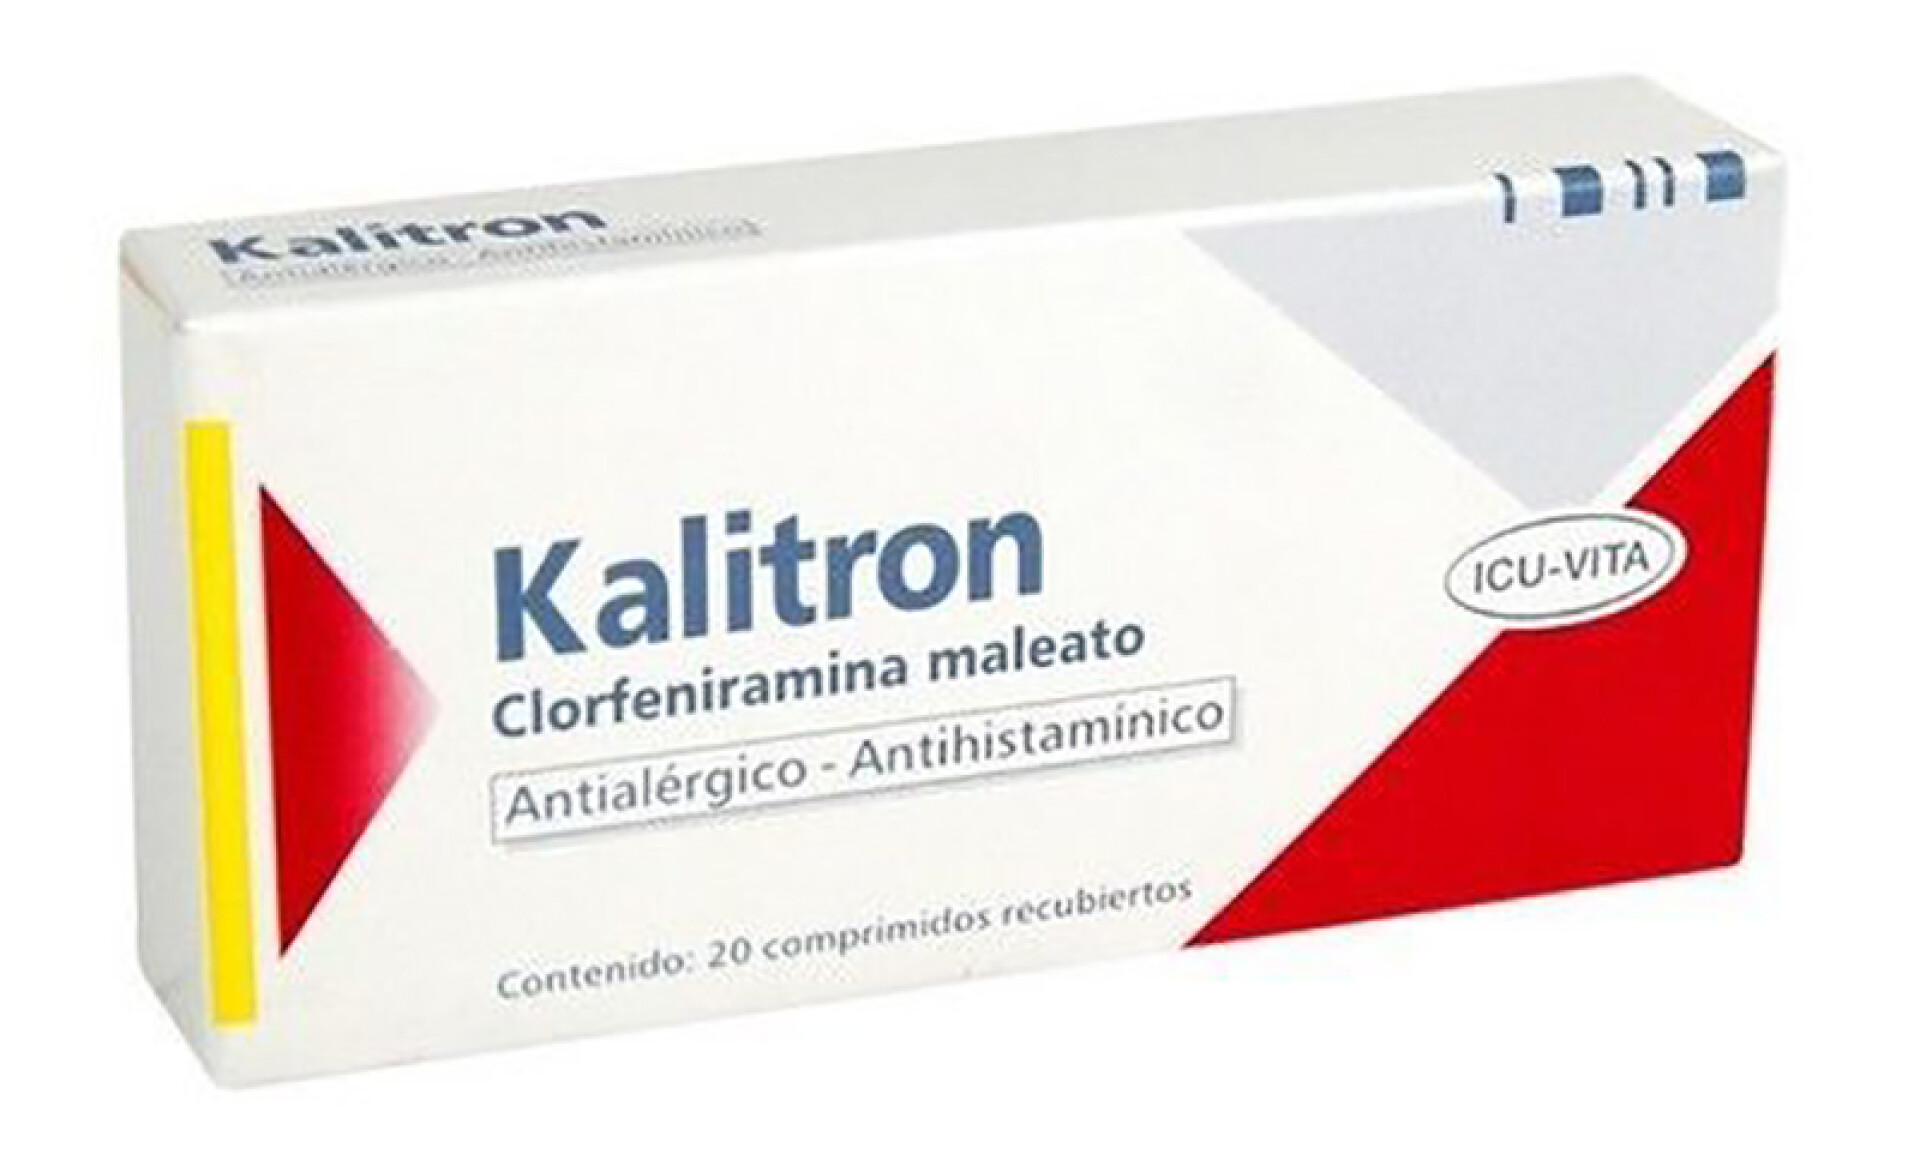 Kalitron antialérgico - simple x 20 comprimidos 